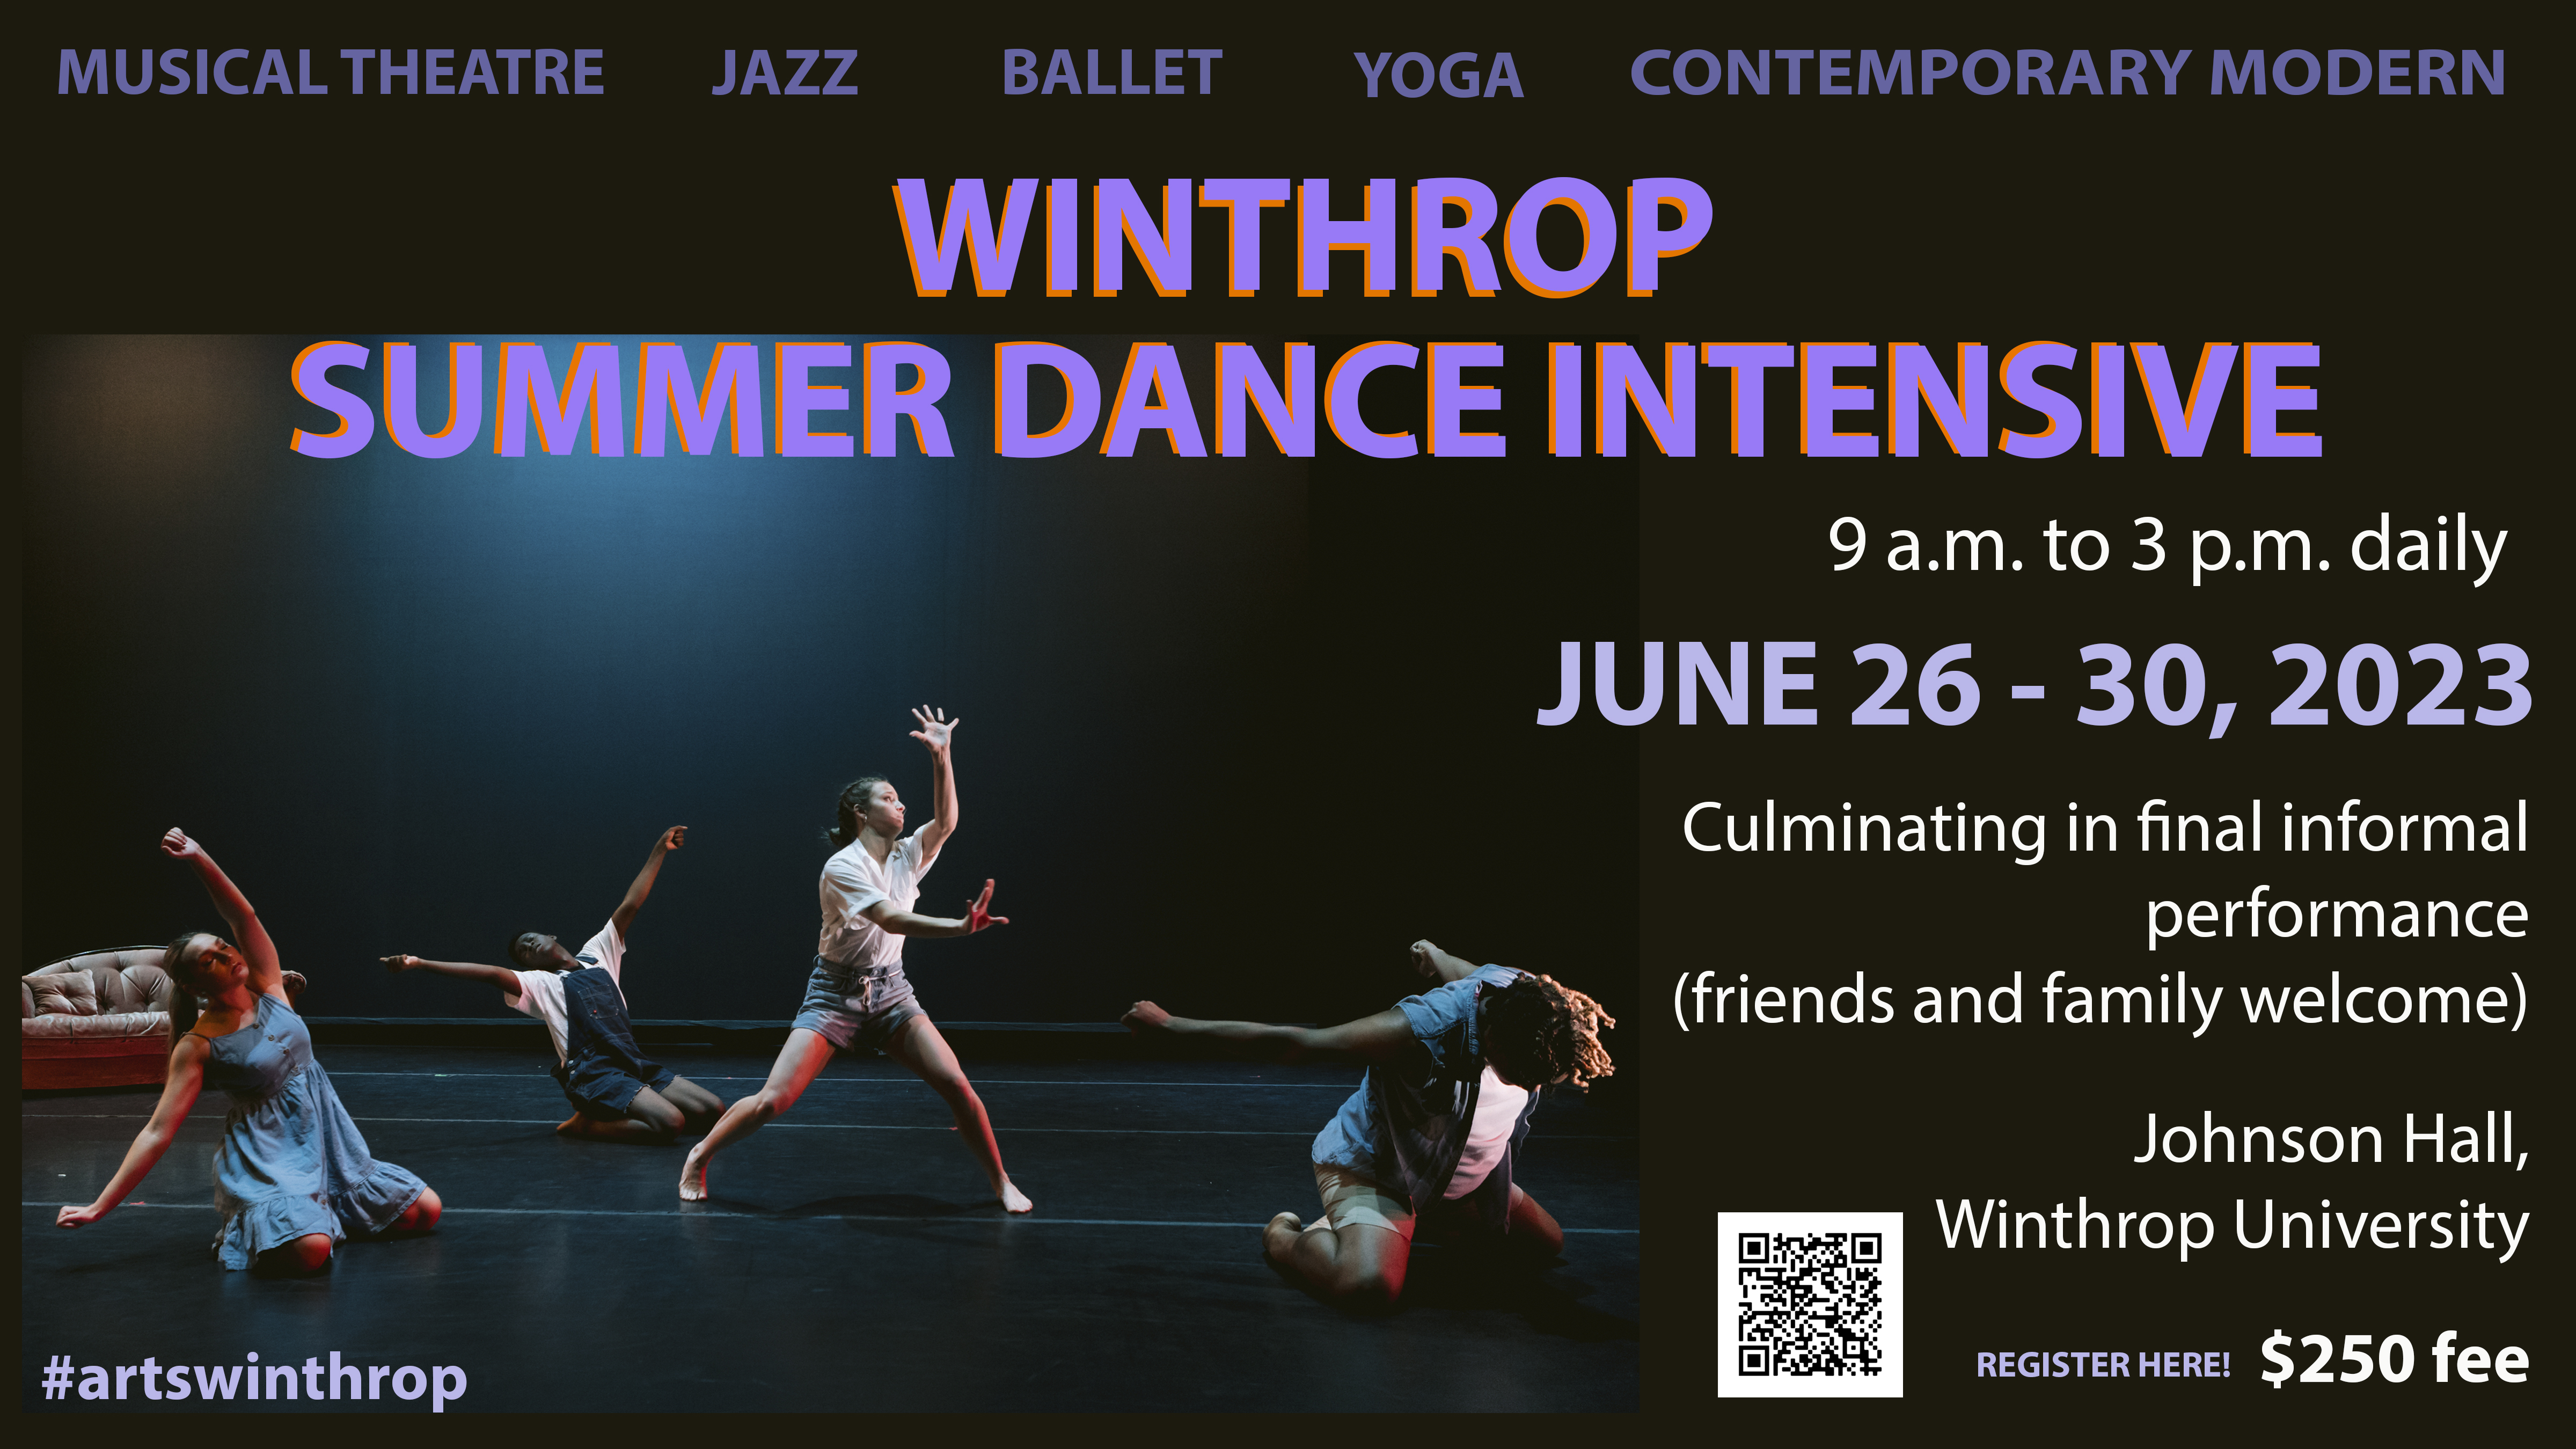 Summer Dance Intensive flyer